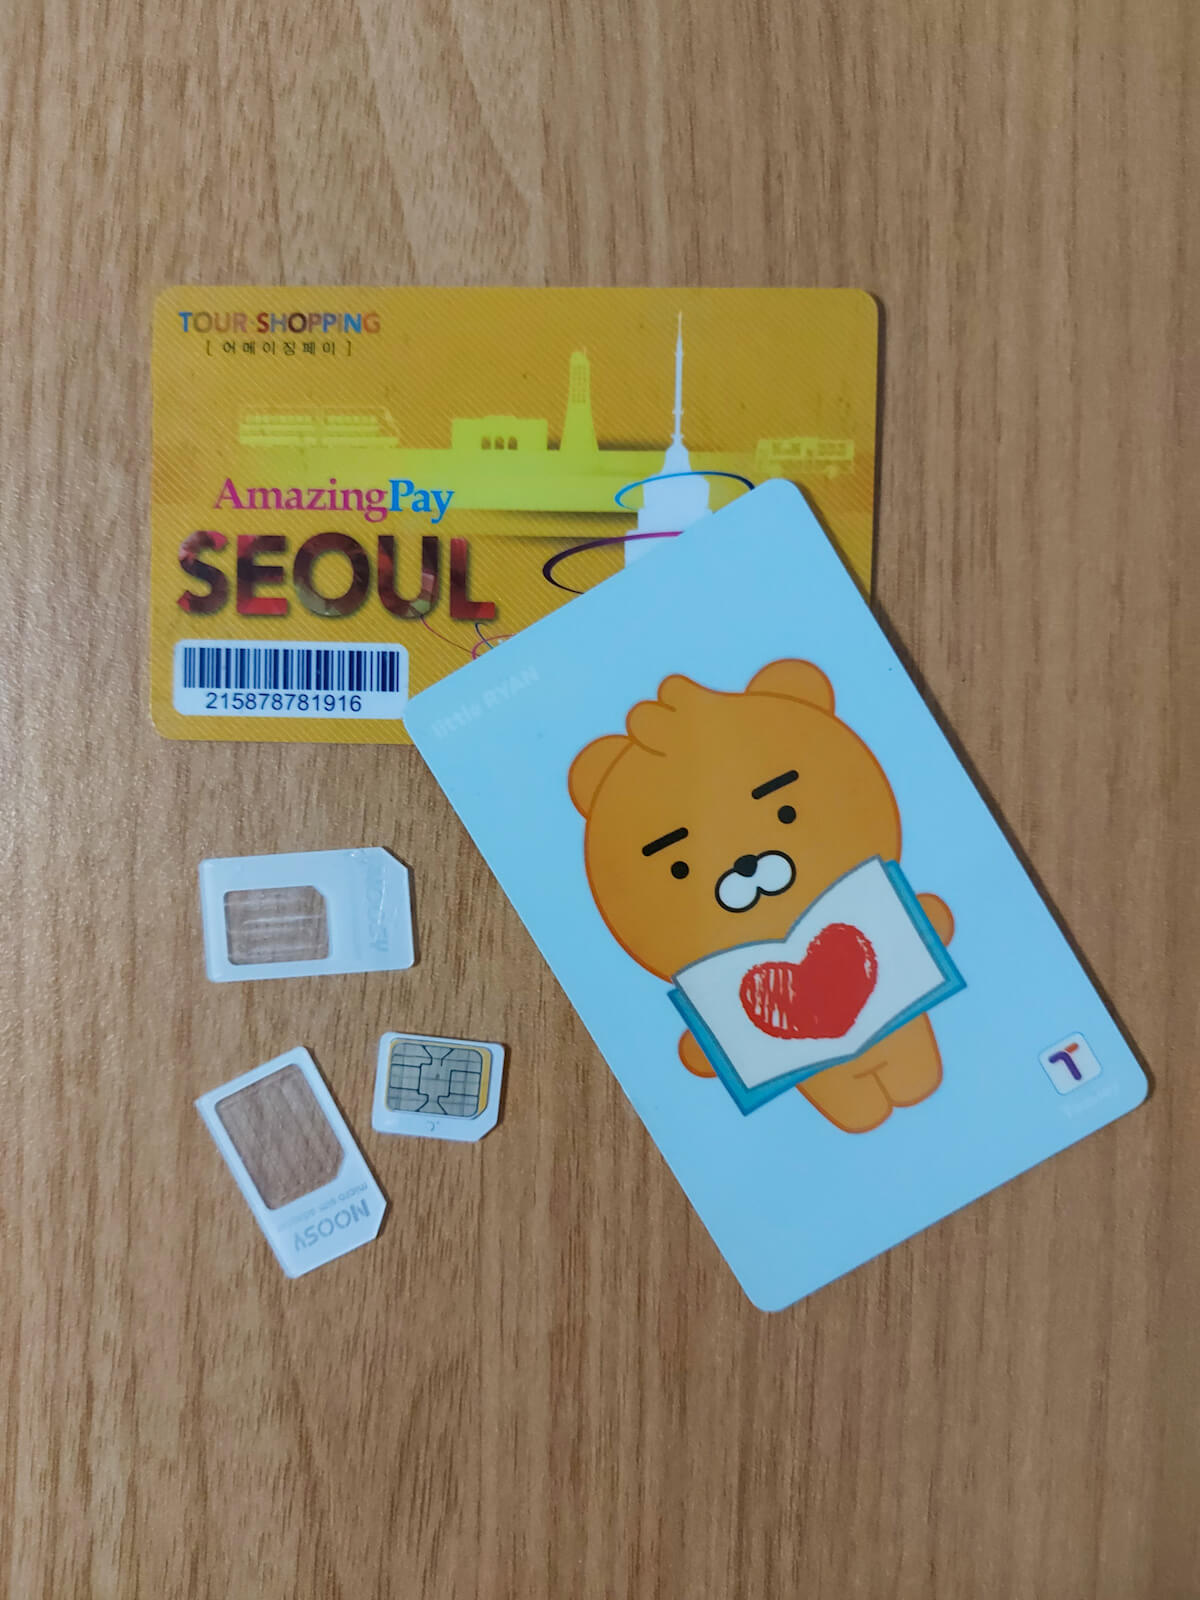 Korea SIM Cards and T-Money Cards